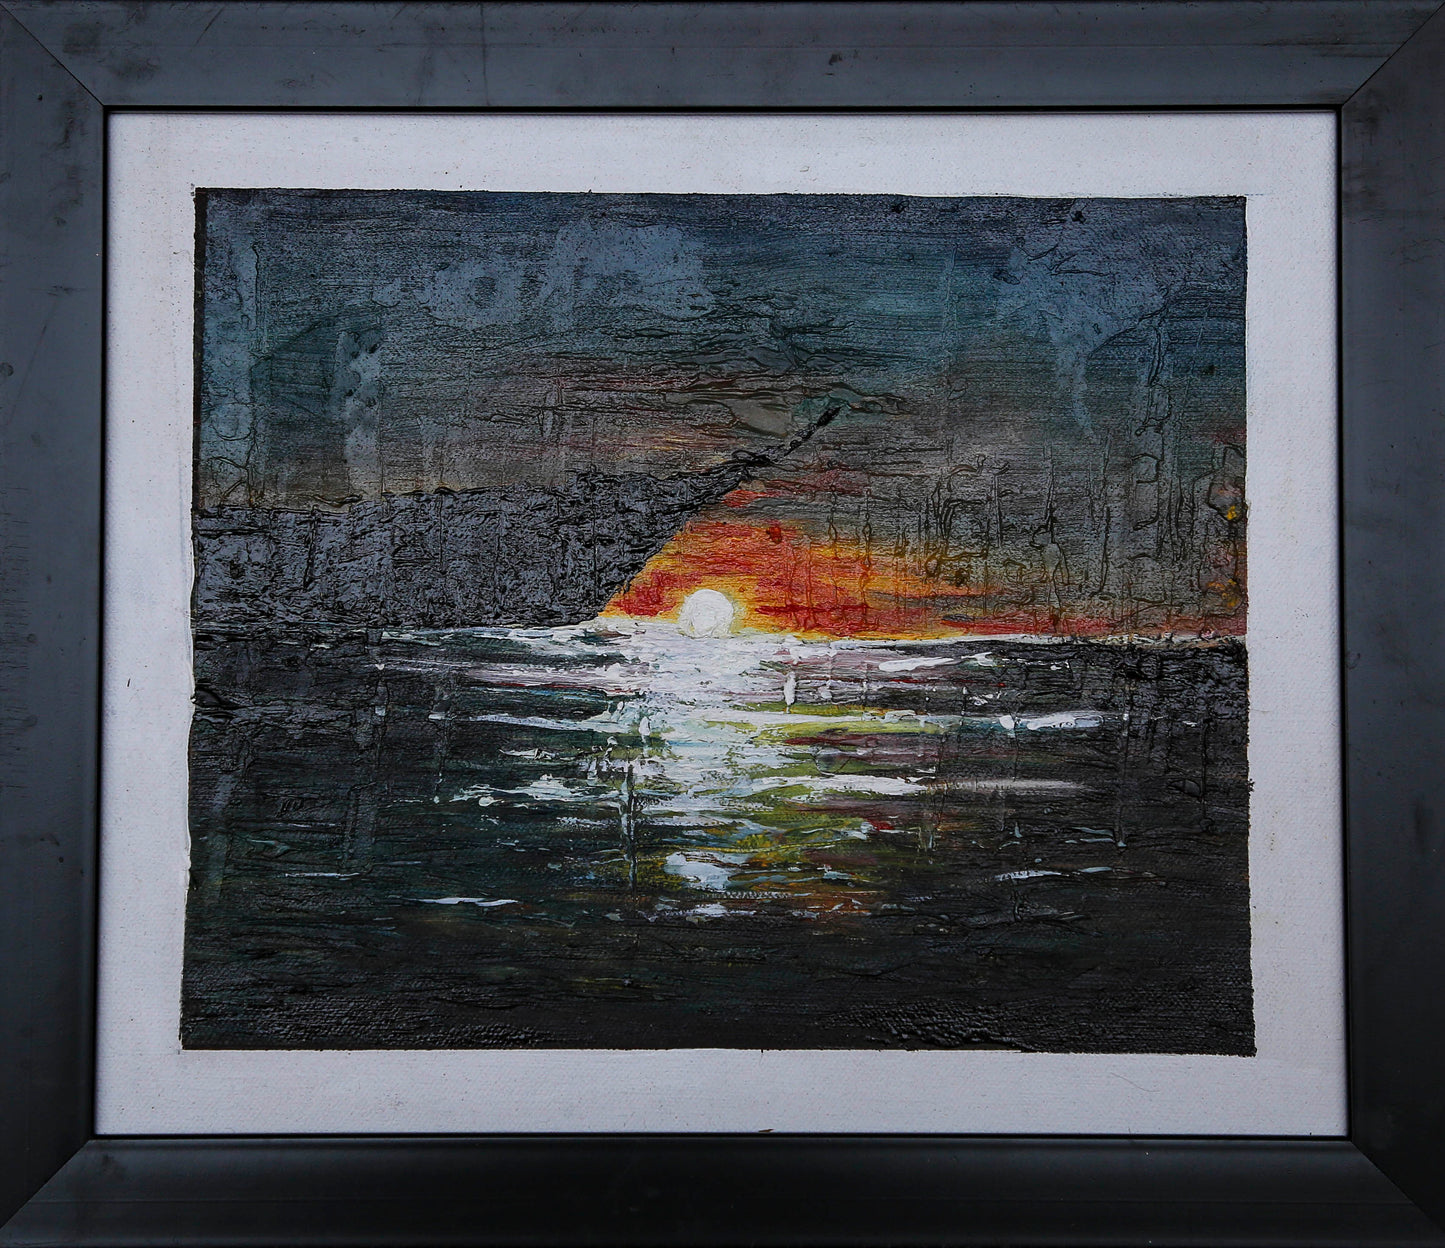 Sunset painting oil paint, landscape, indian terrain